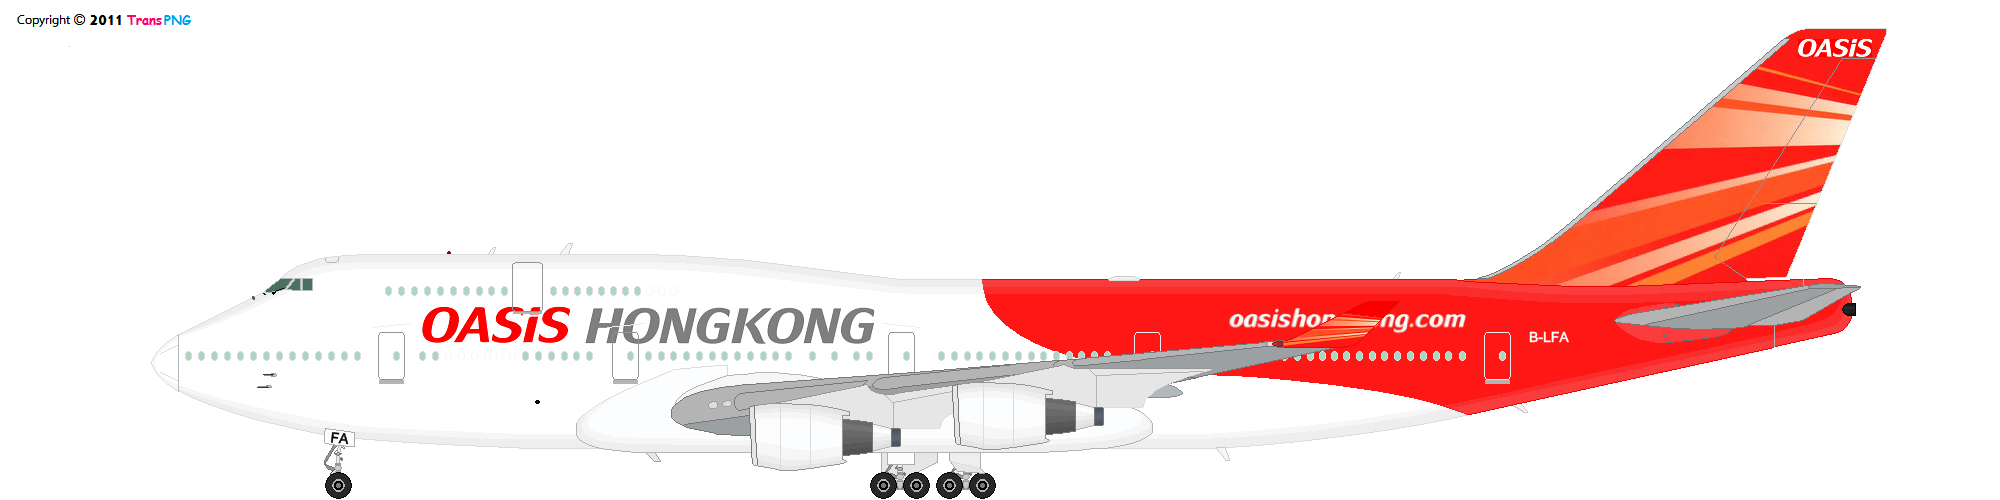 [6097] Oasis Hong Kong Airlines 52135900324_bf75444356_o